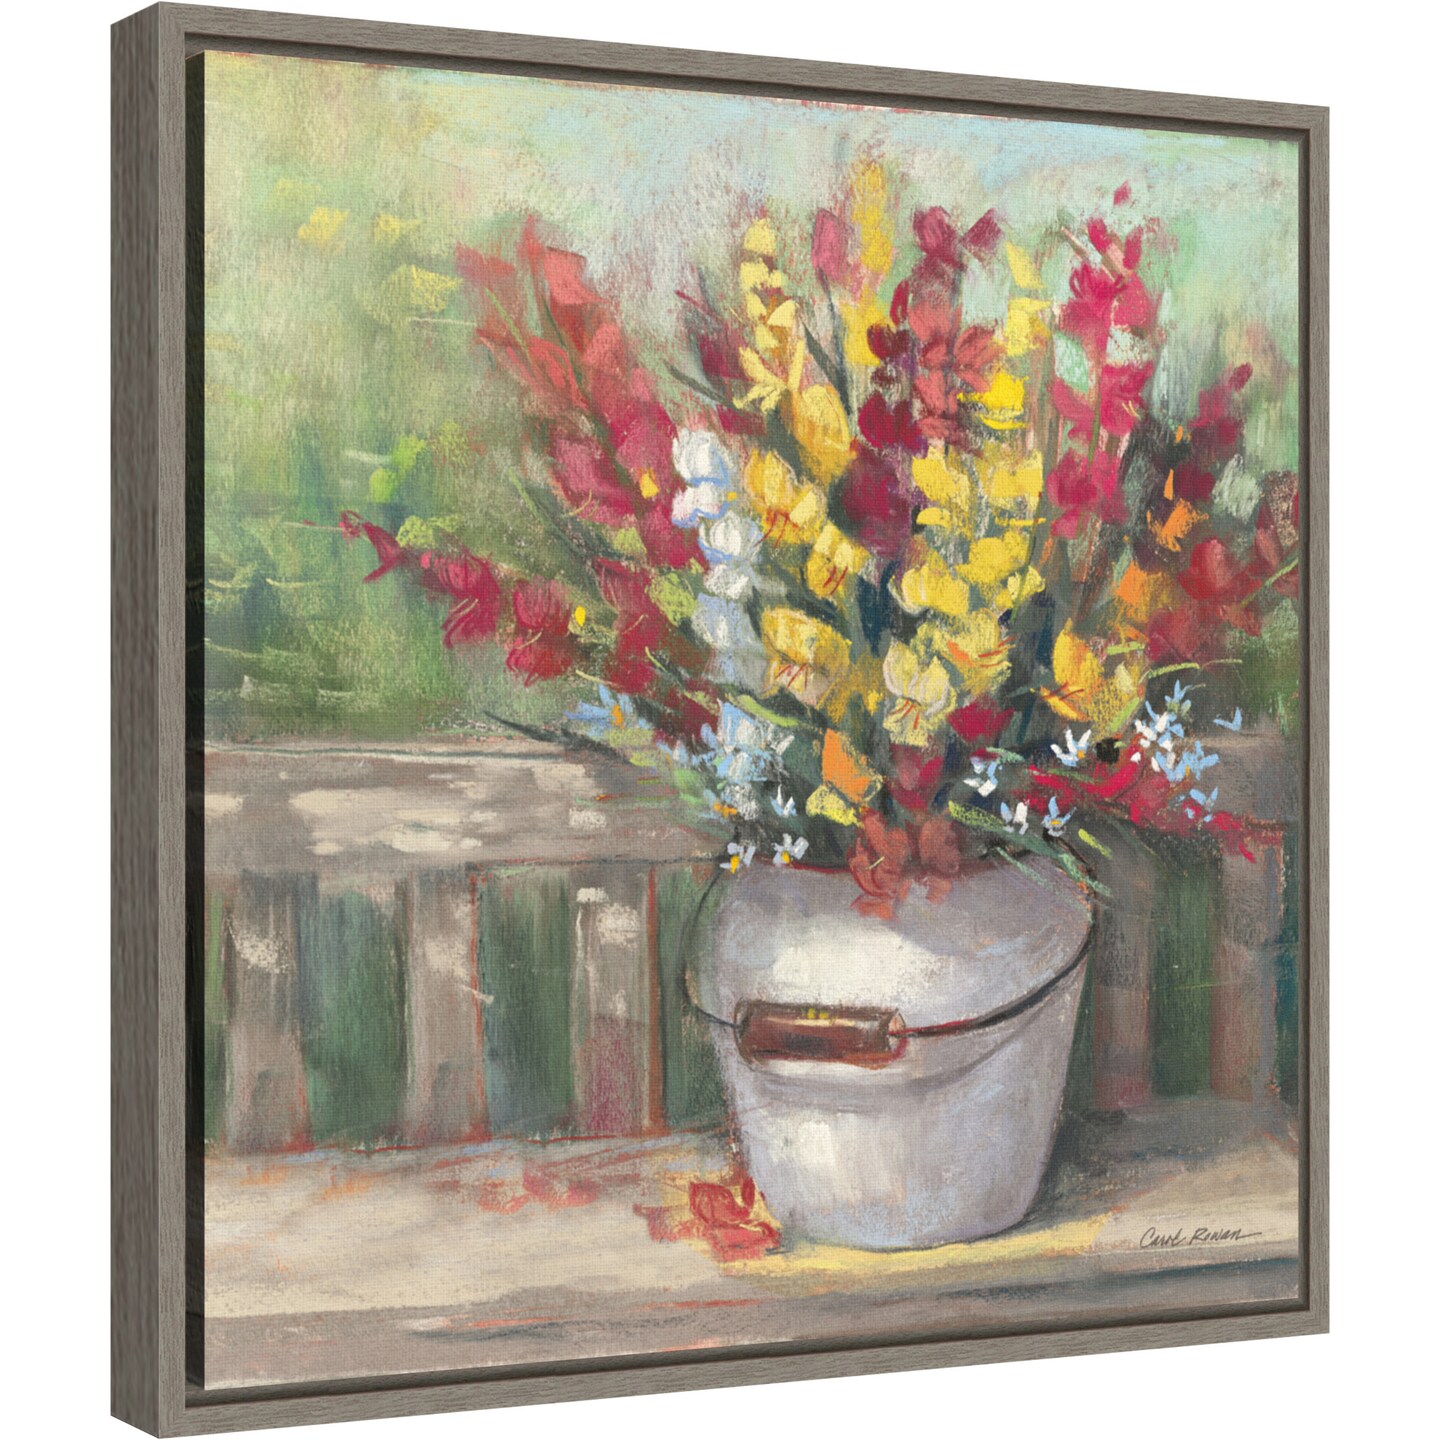 Snapdragon Bouquet by Carol Rowan 16-in. W x 16-in. H. Canvas Wall Art Print Framed in Grey